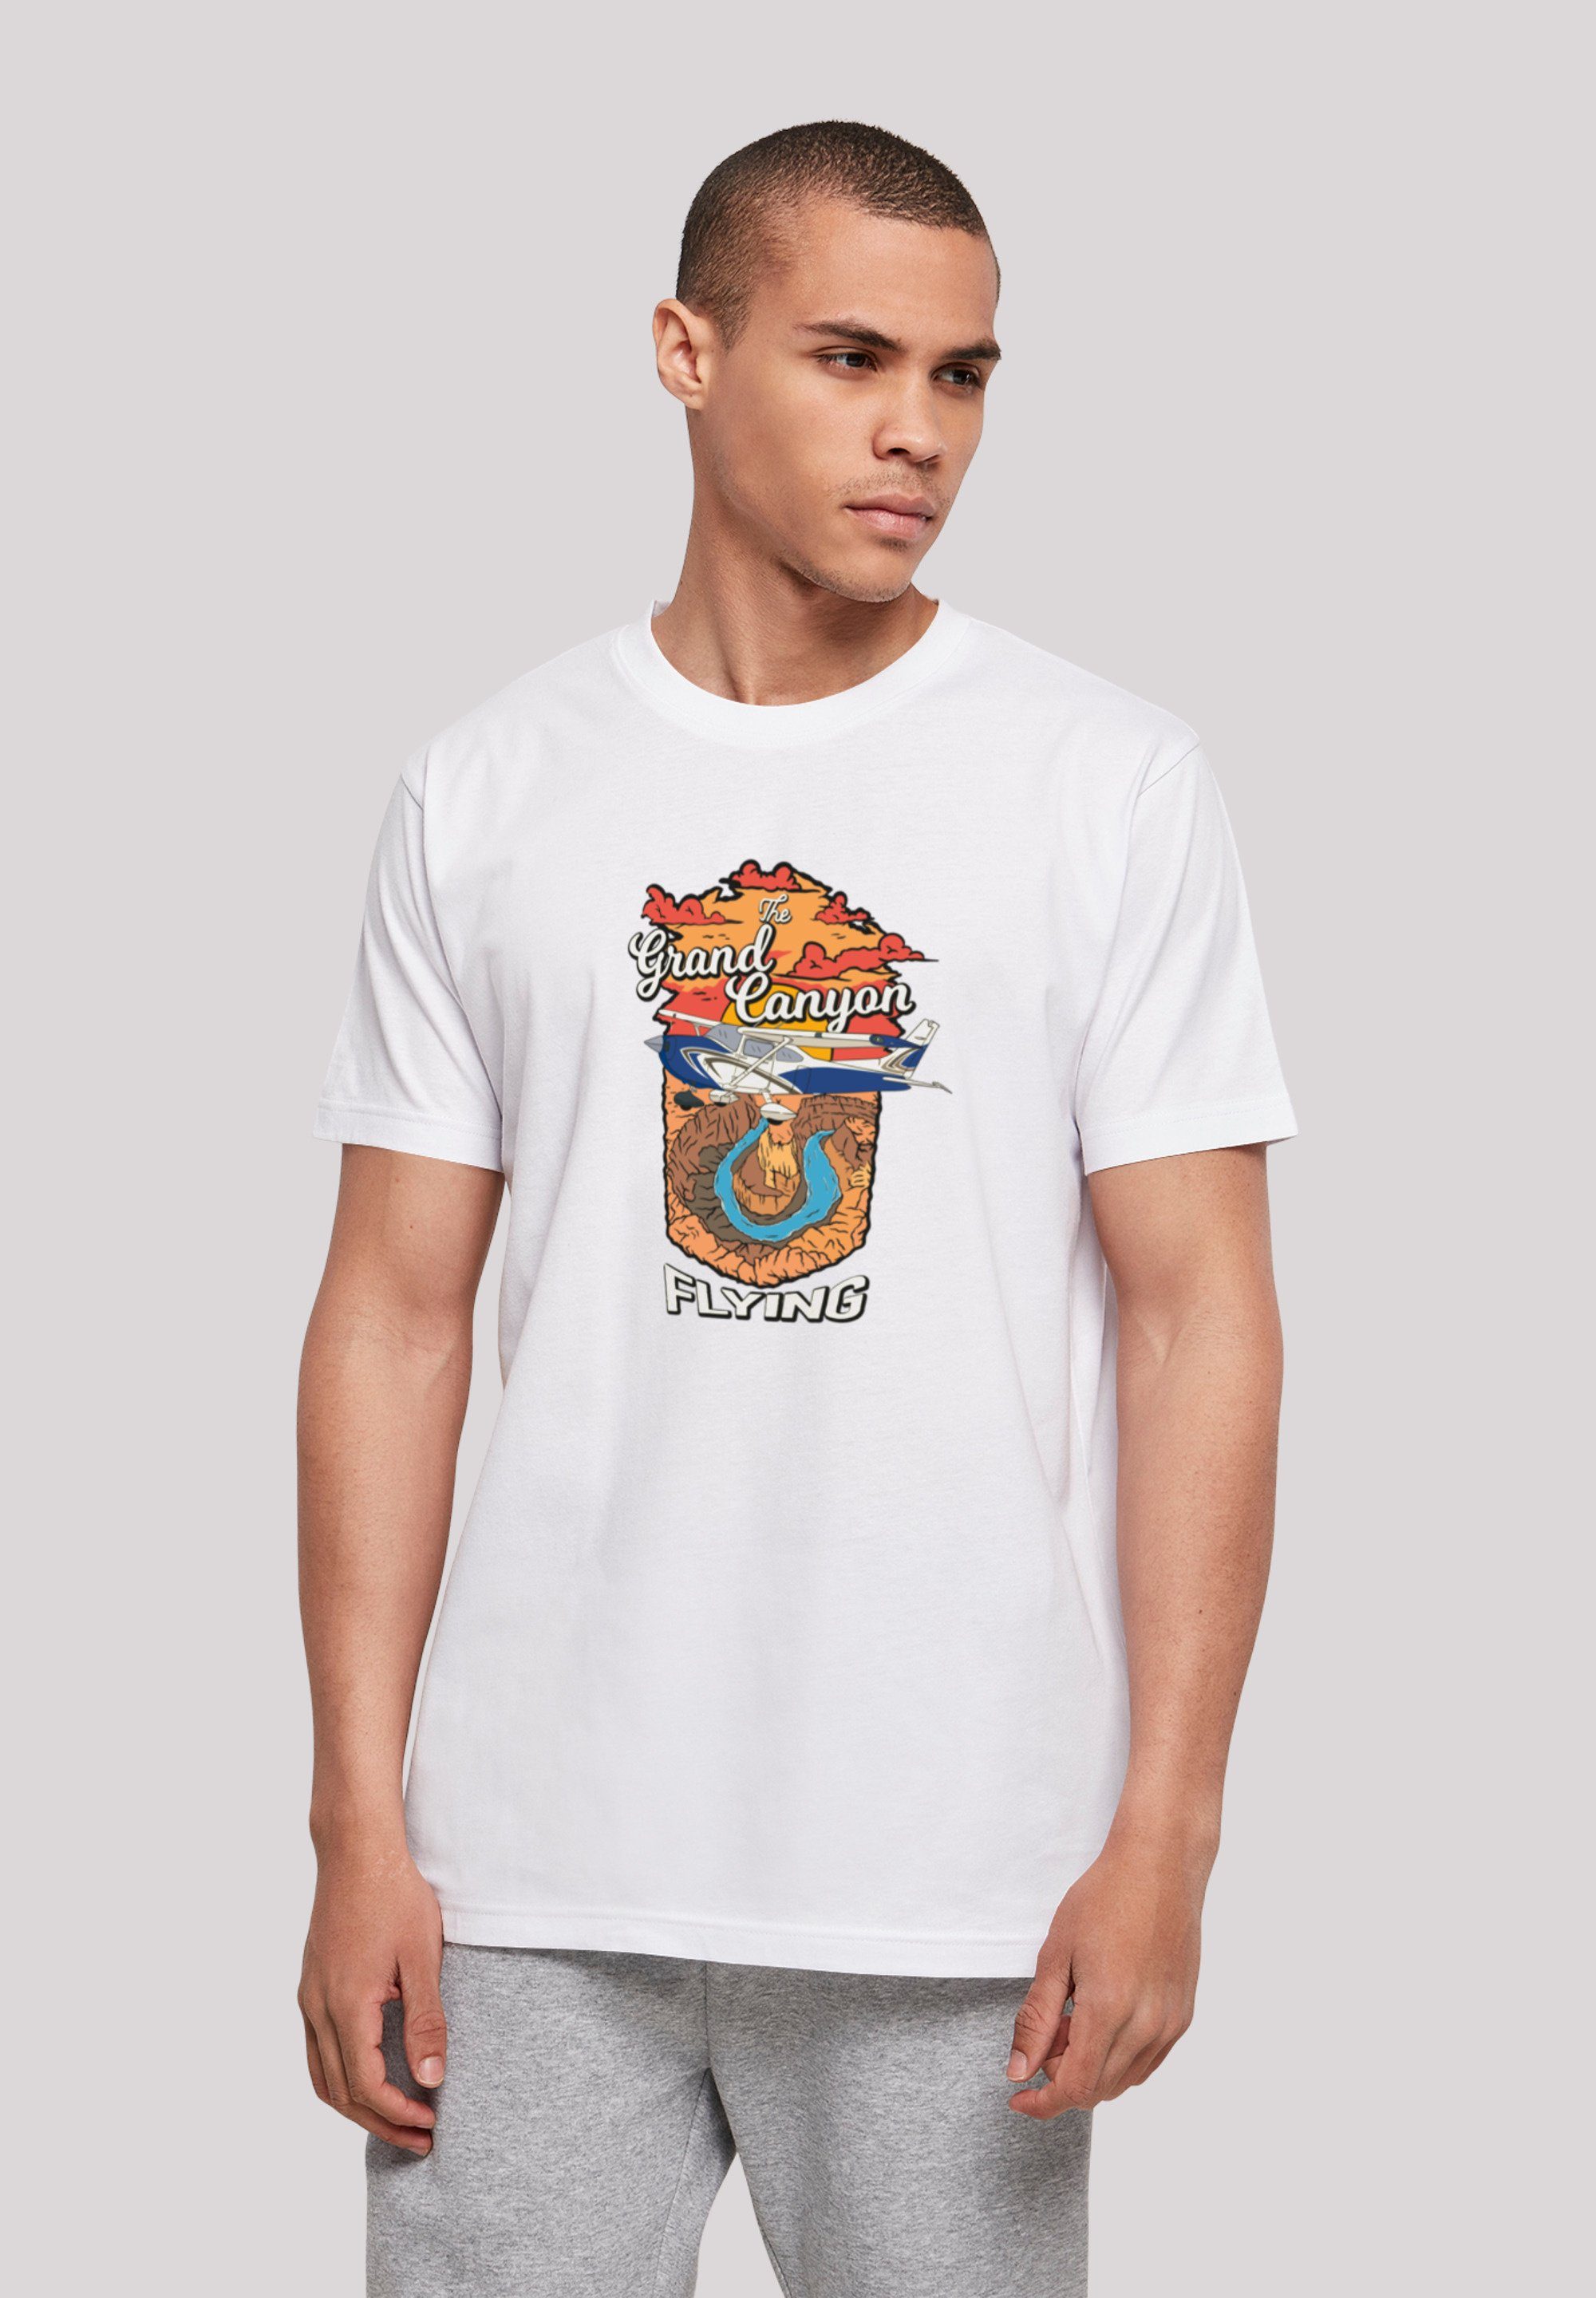 weicher Print, Grand Sehr Baumwollstoff hohem Canyon F4NT4STIC mit Tragekomfort Flying T-Shirt